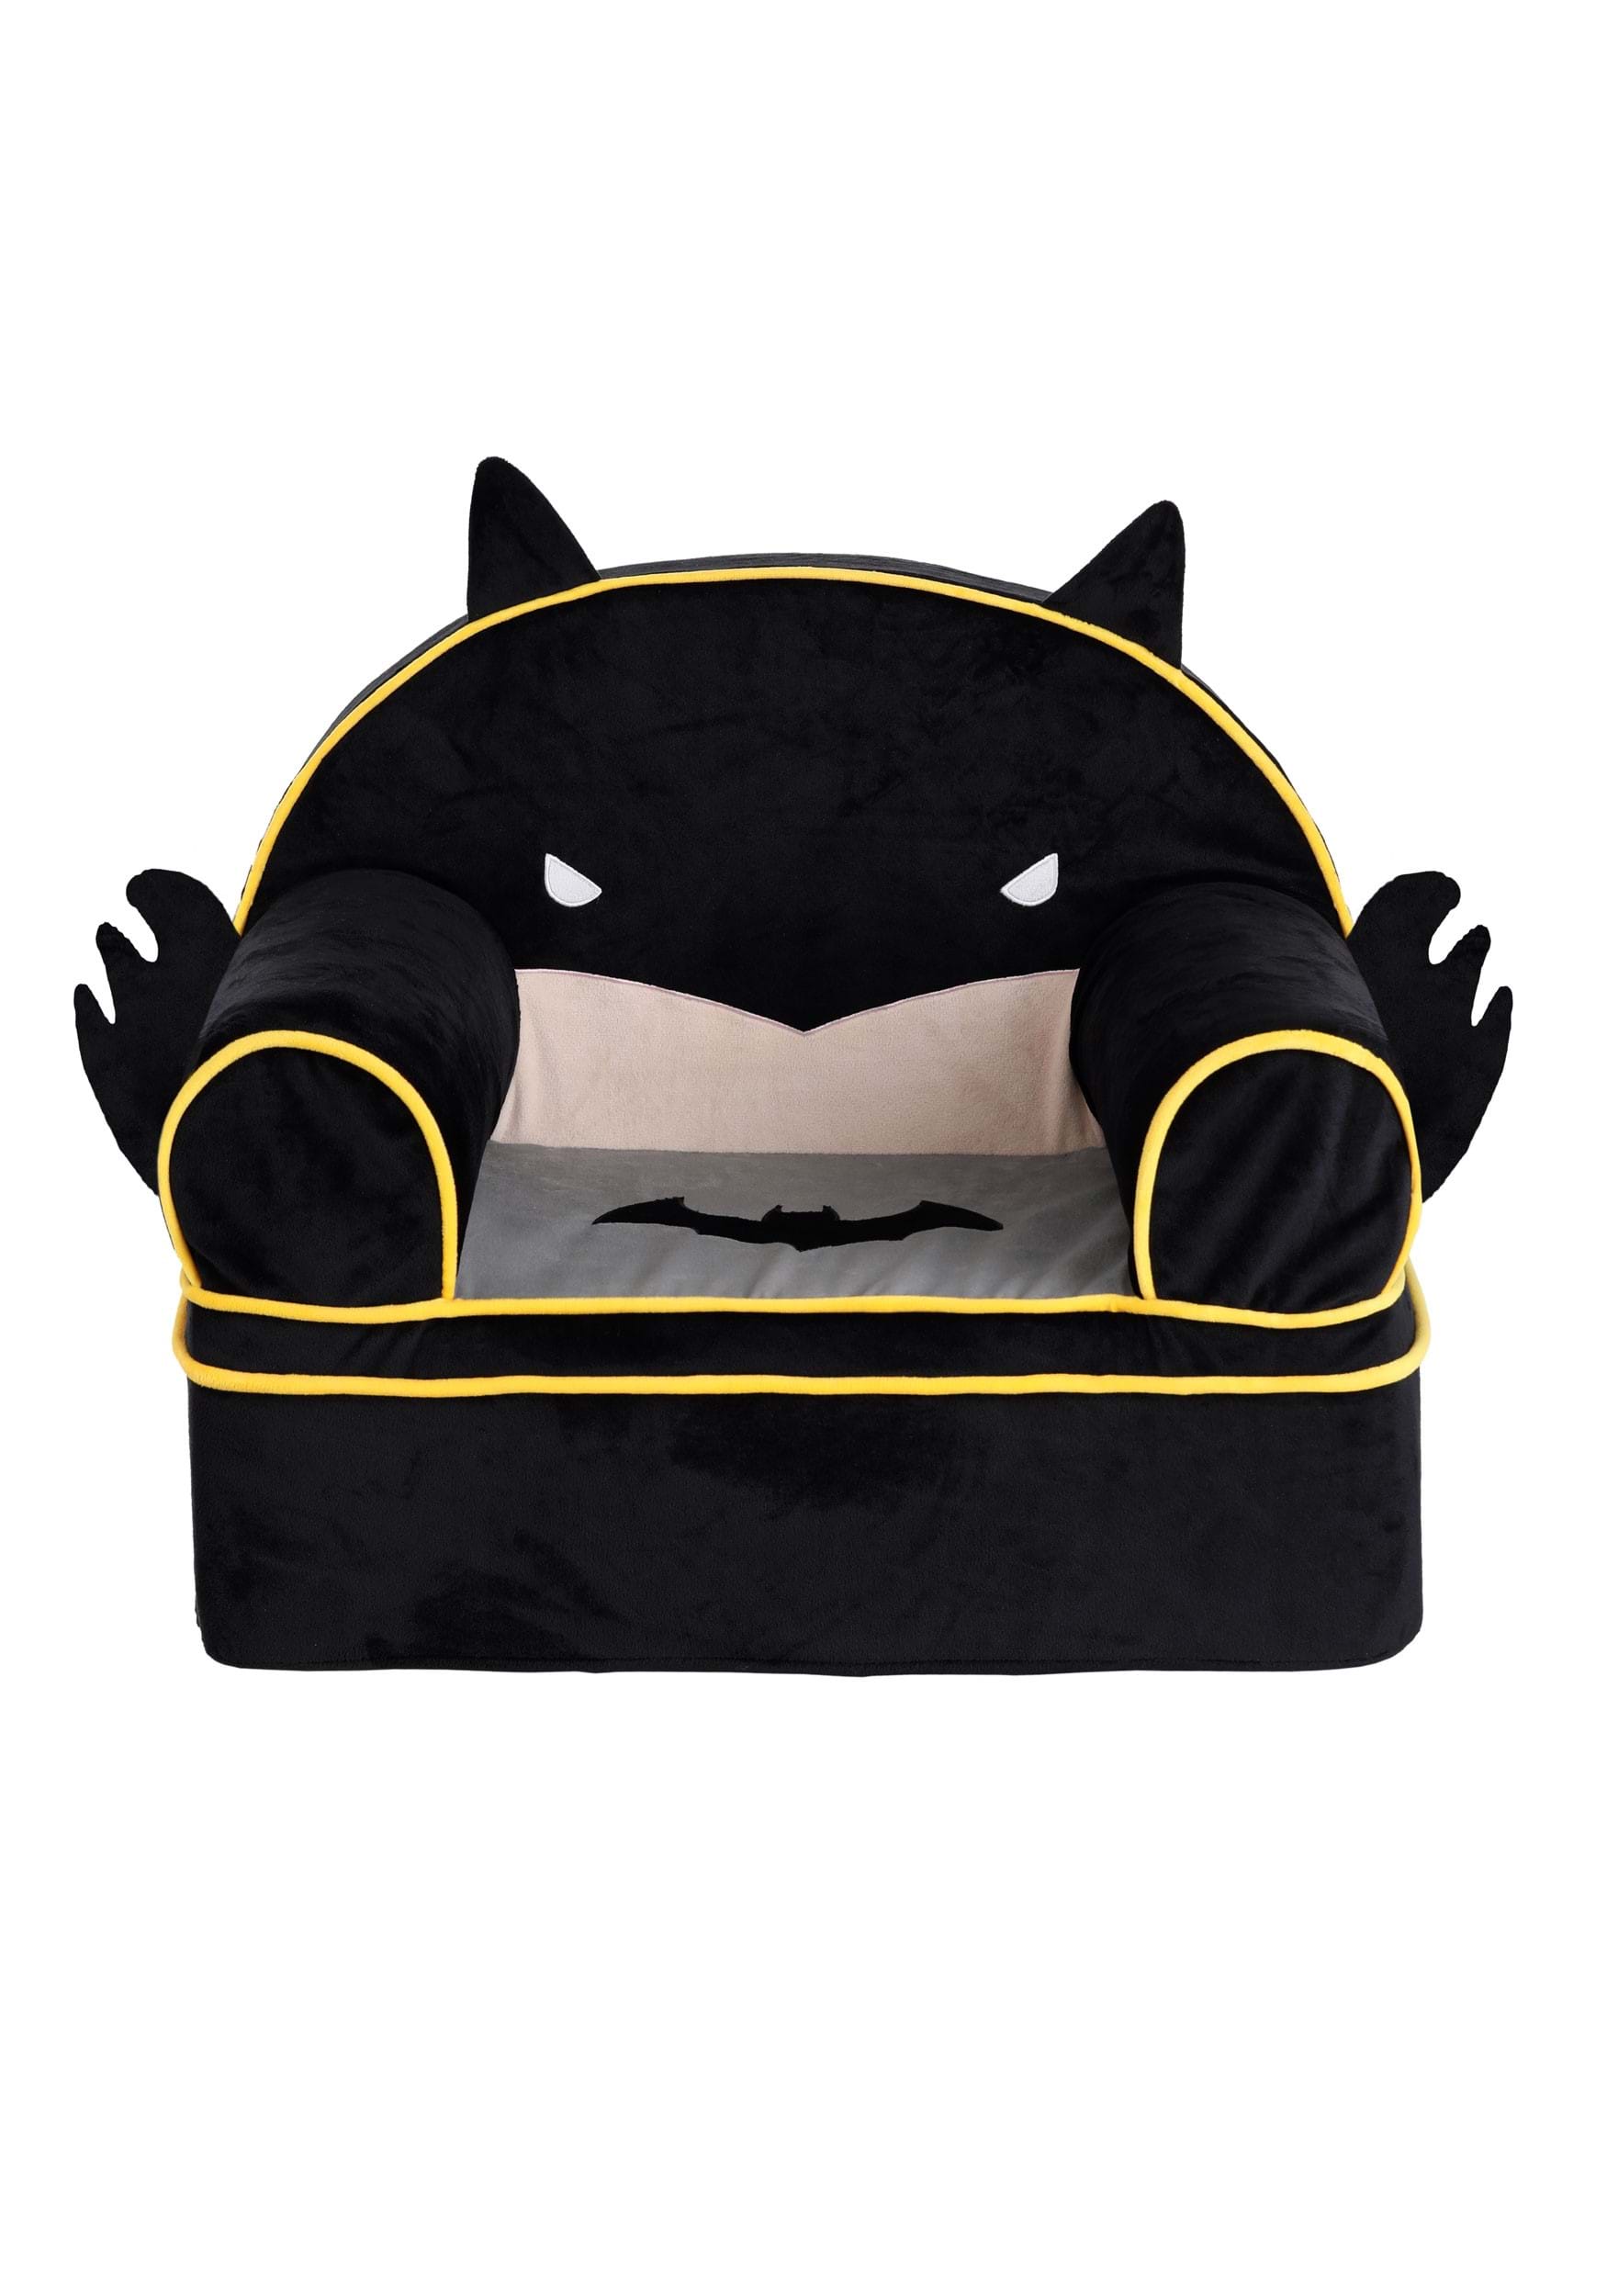 Plush Batman Face Chair